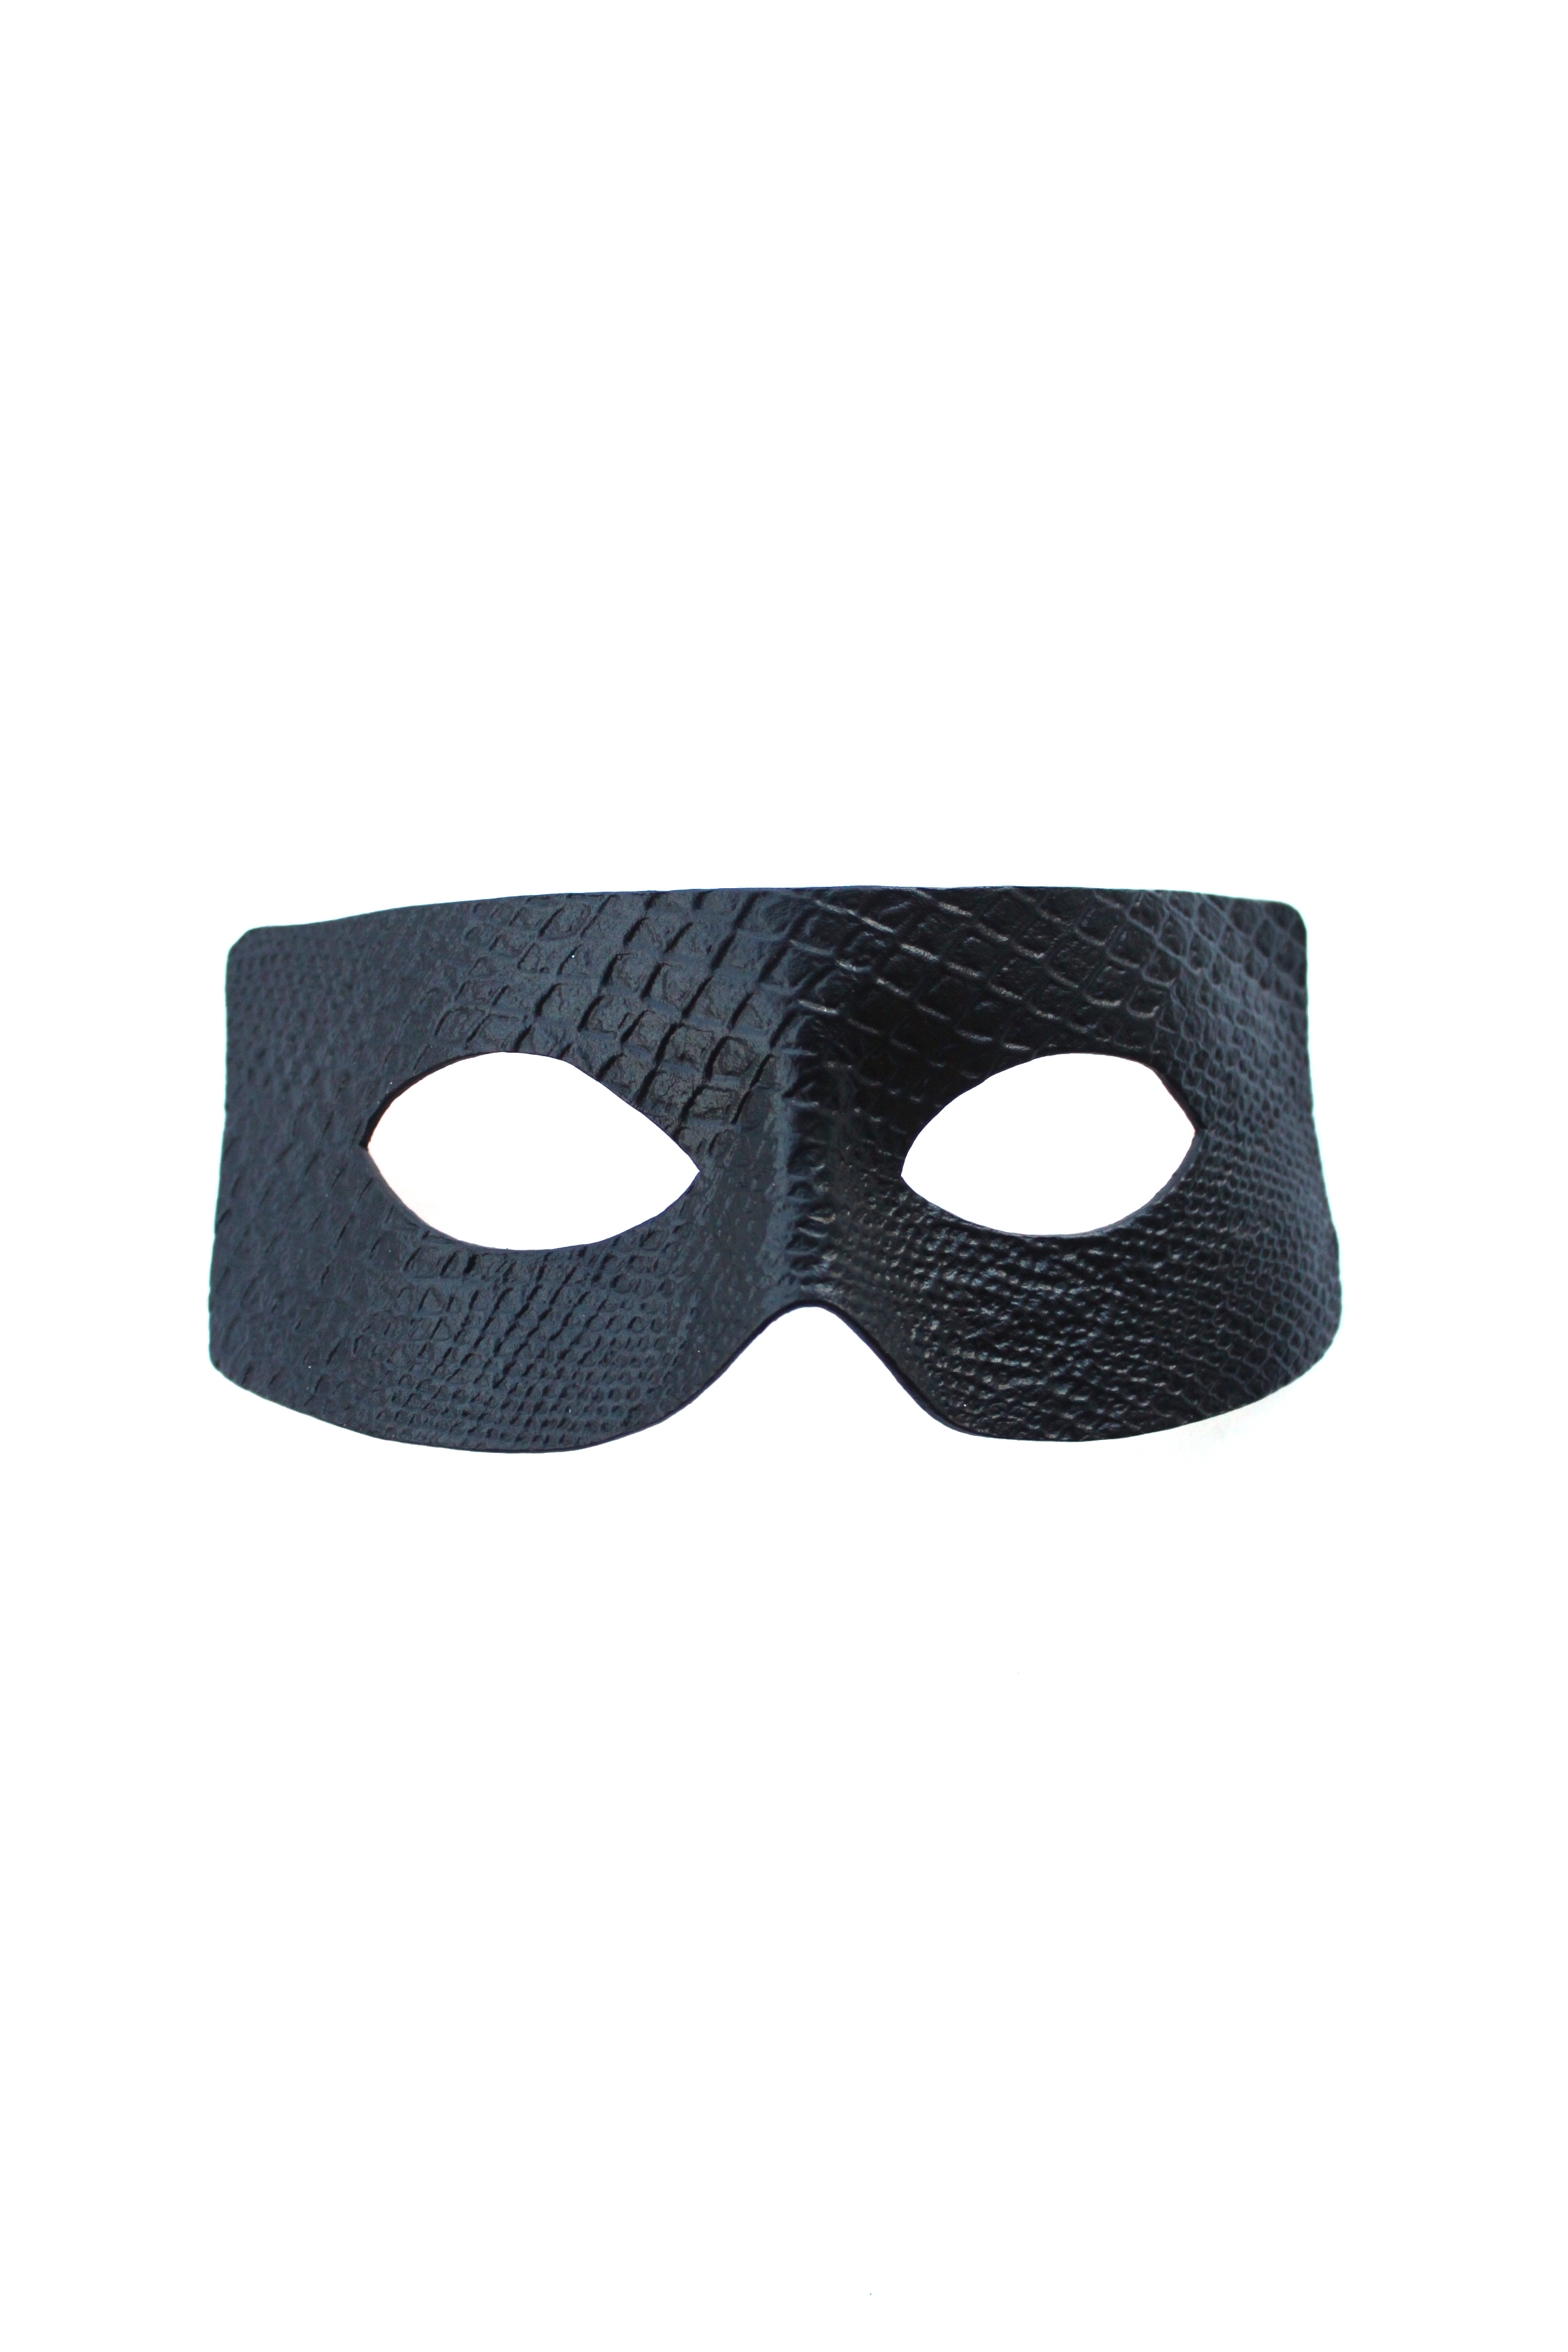 Python masks. Маска "зорро", чёрная. Маска зорро. Маска зорро маска. Шпионская маска.